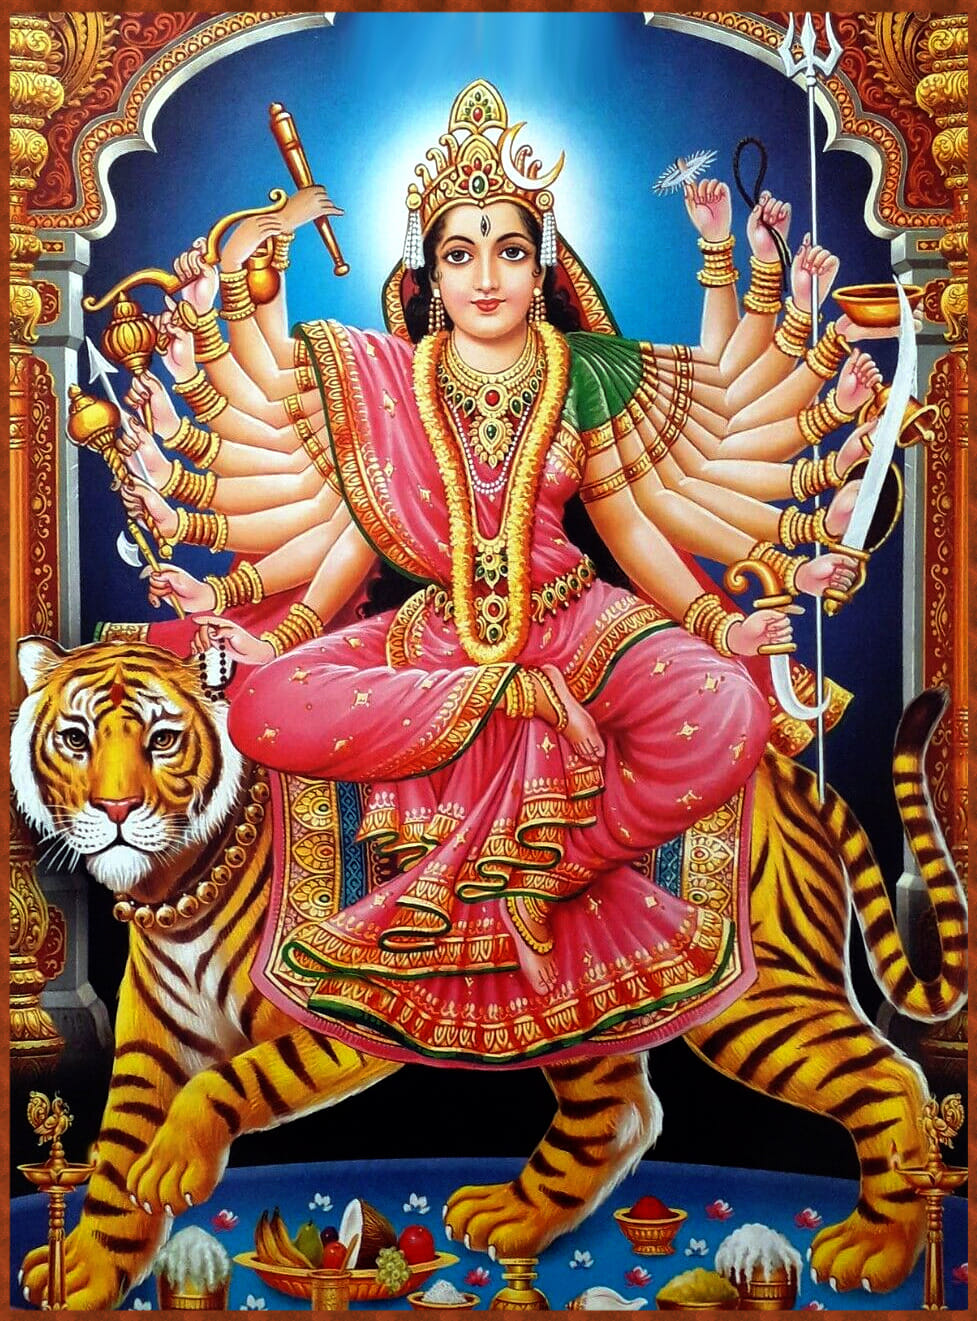 Goddess Durga Maa with 18 arms-durga maa download-goddess durga download-goddess images download-stumbit spirituality